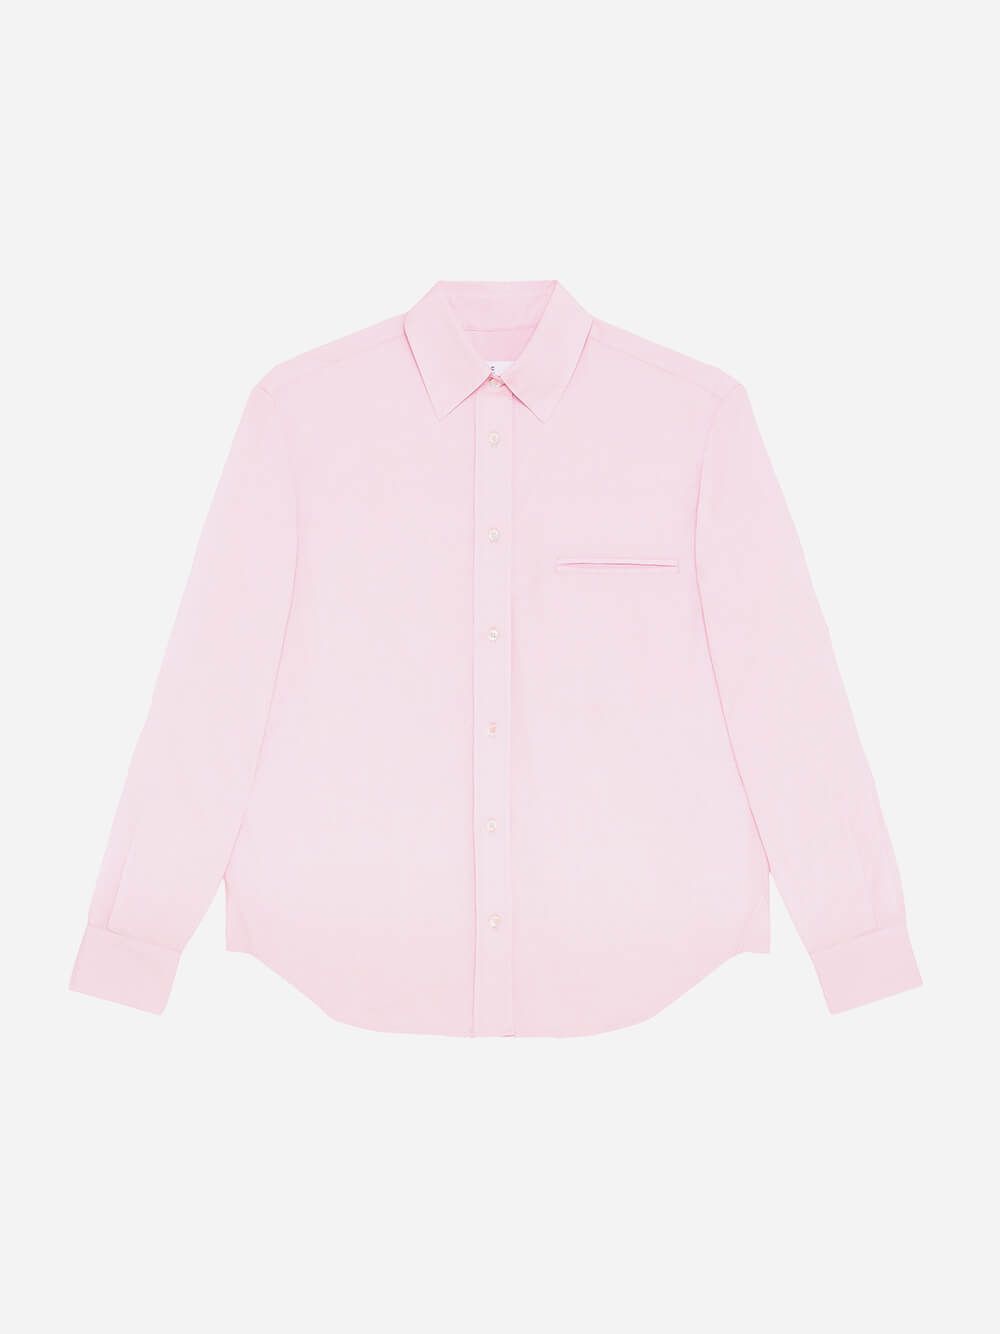 Léo Pink Shirt | Le Boyfriend